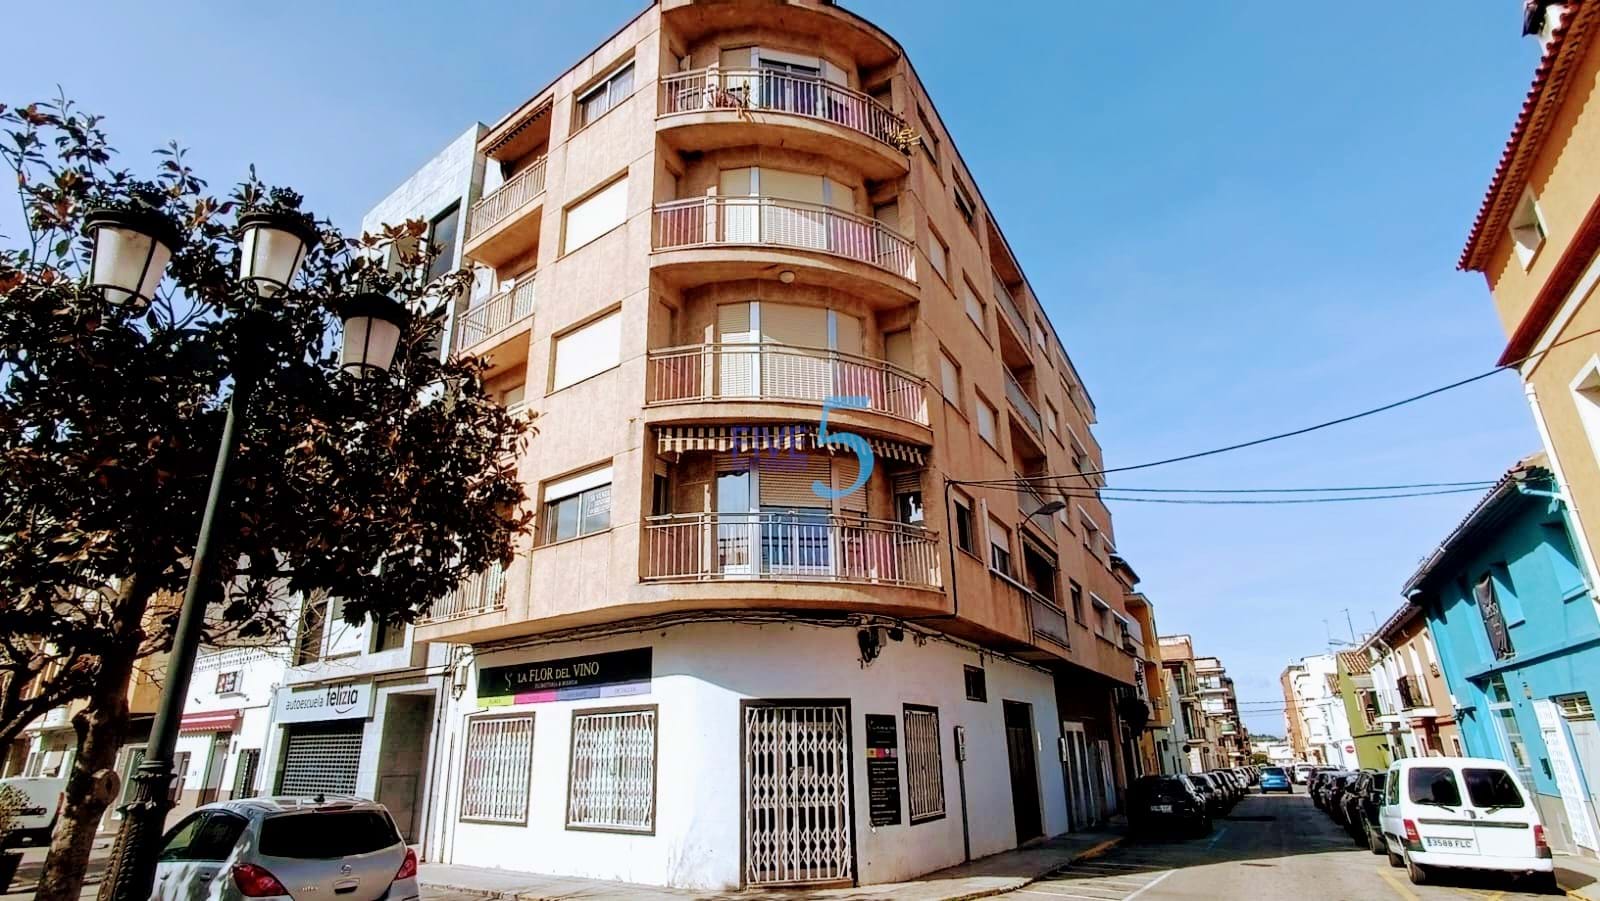 Apartment for sale in Tabernes del la Valldigna 1